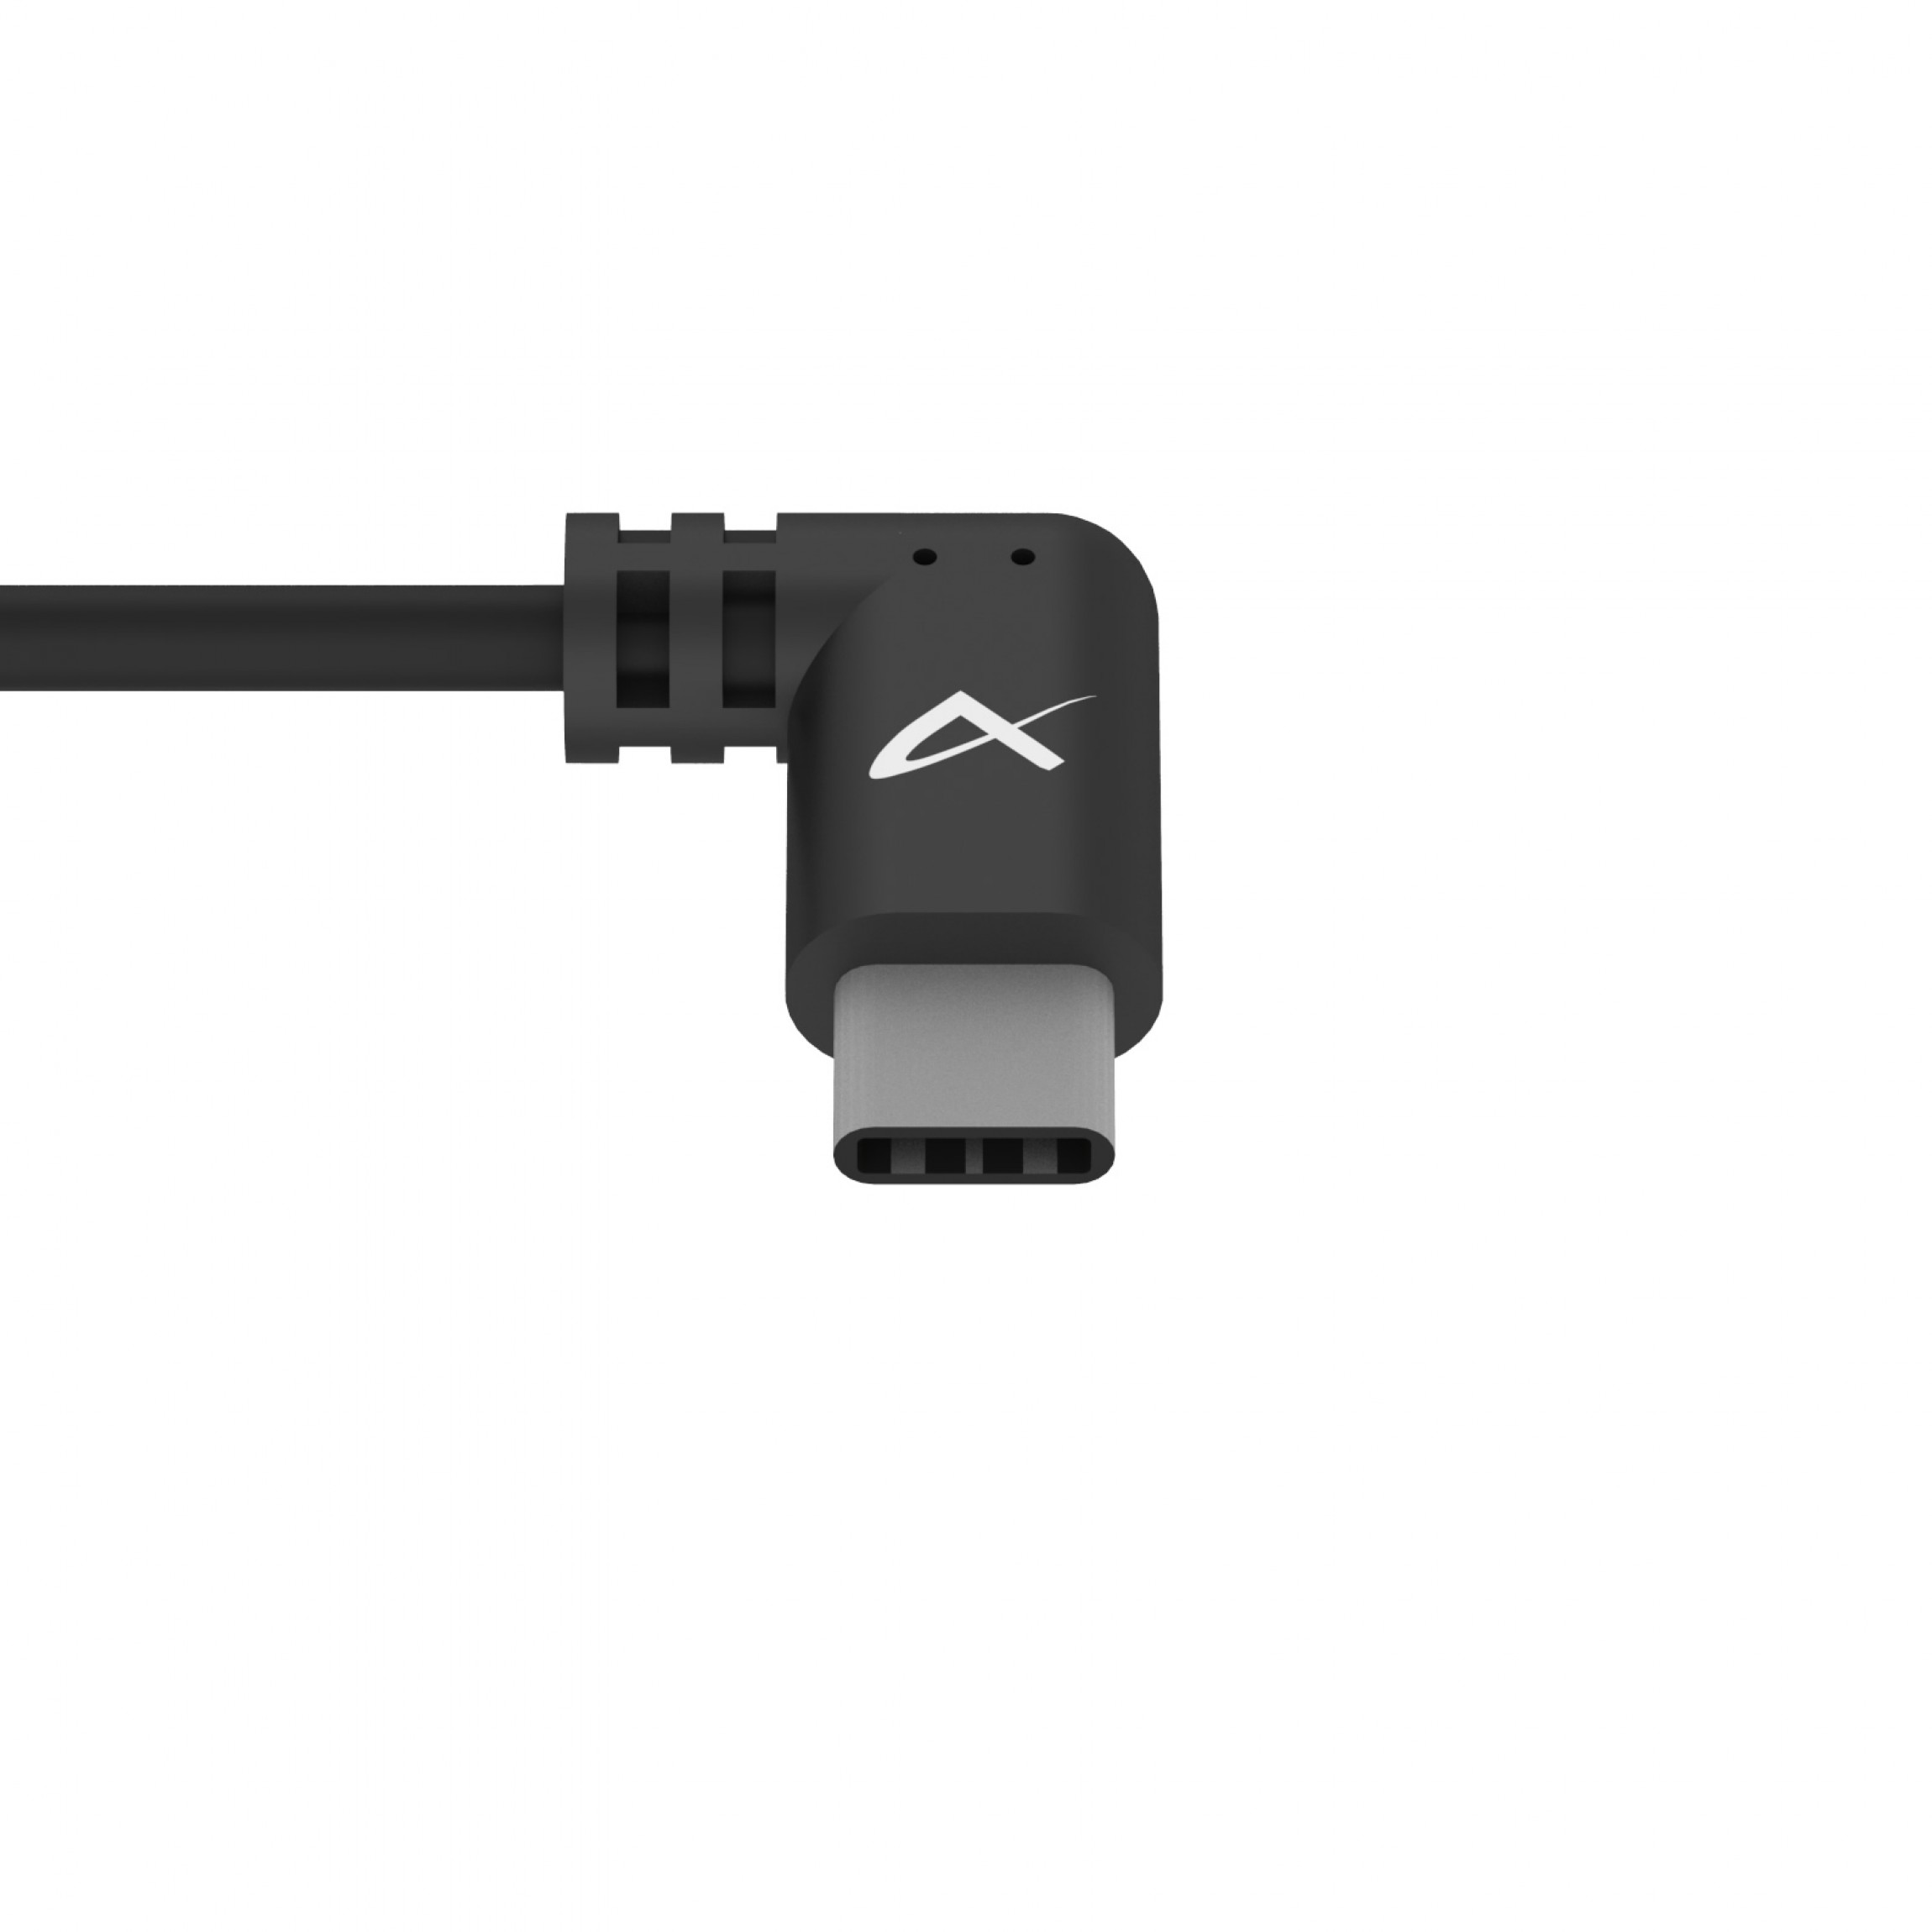 Petite comb. prise 13, bloc chargeur USB 2,4A/5VDC, ENC, bc - MAX